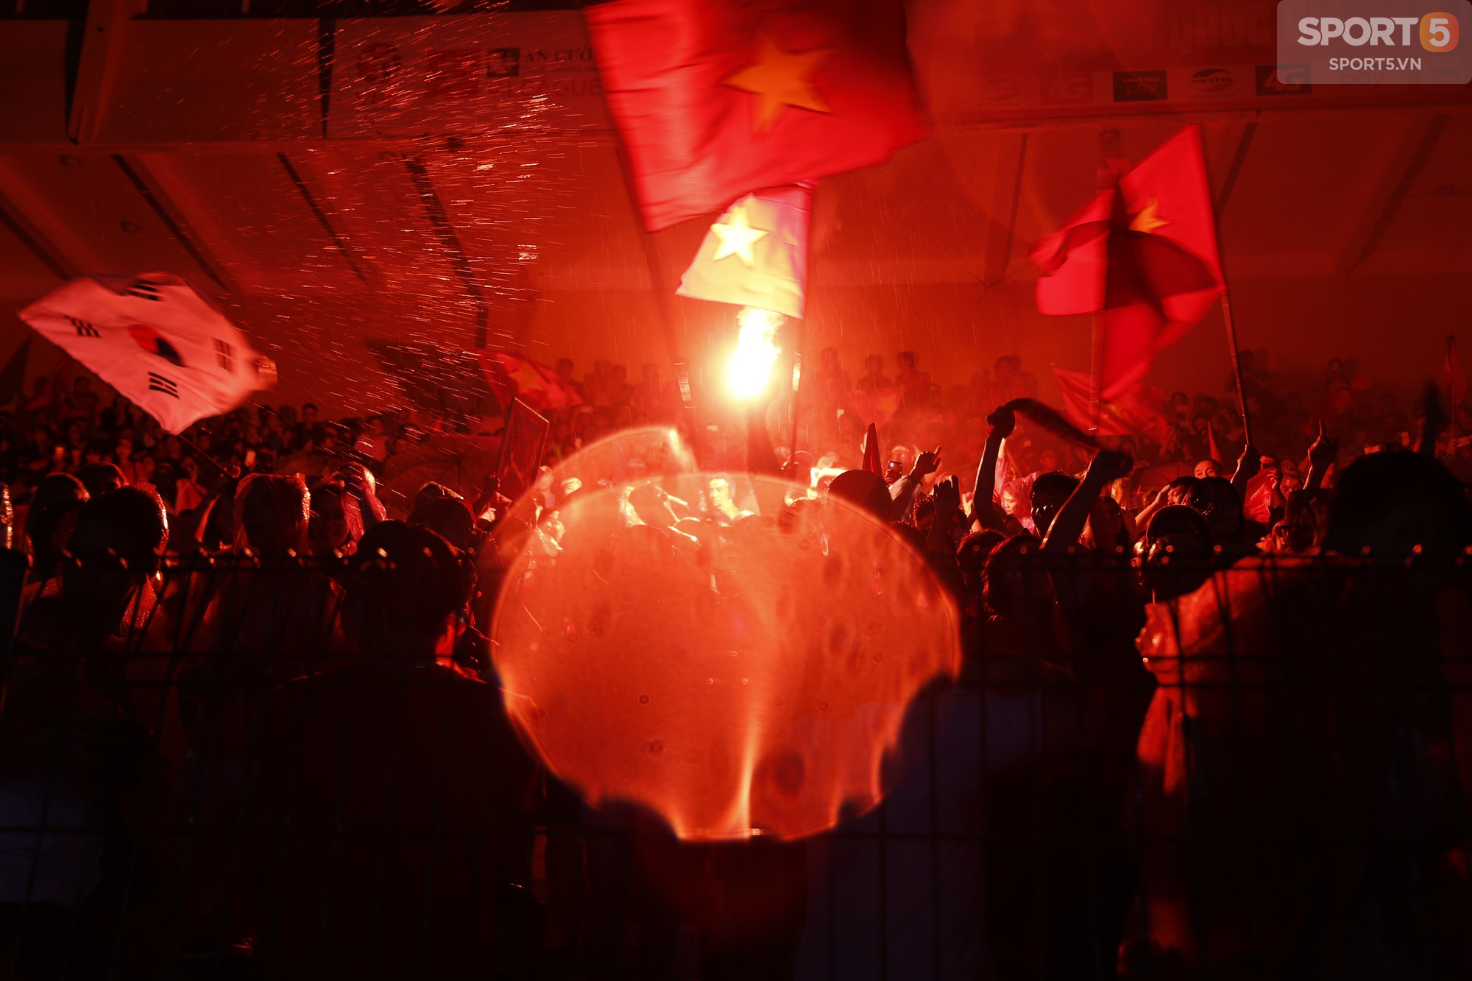 Từ Hàng Đẫy đến Bờ Hồ, cả Hà Nội chìm trong lửa đỏ ăn mừng chiến thắng của Olympic Việt Nam - Ảnh 3.